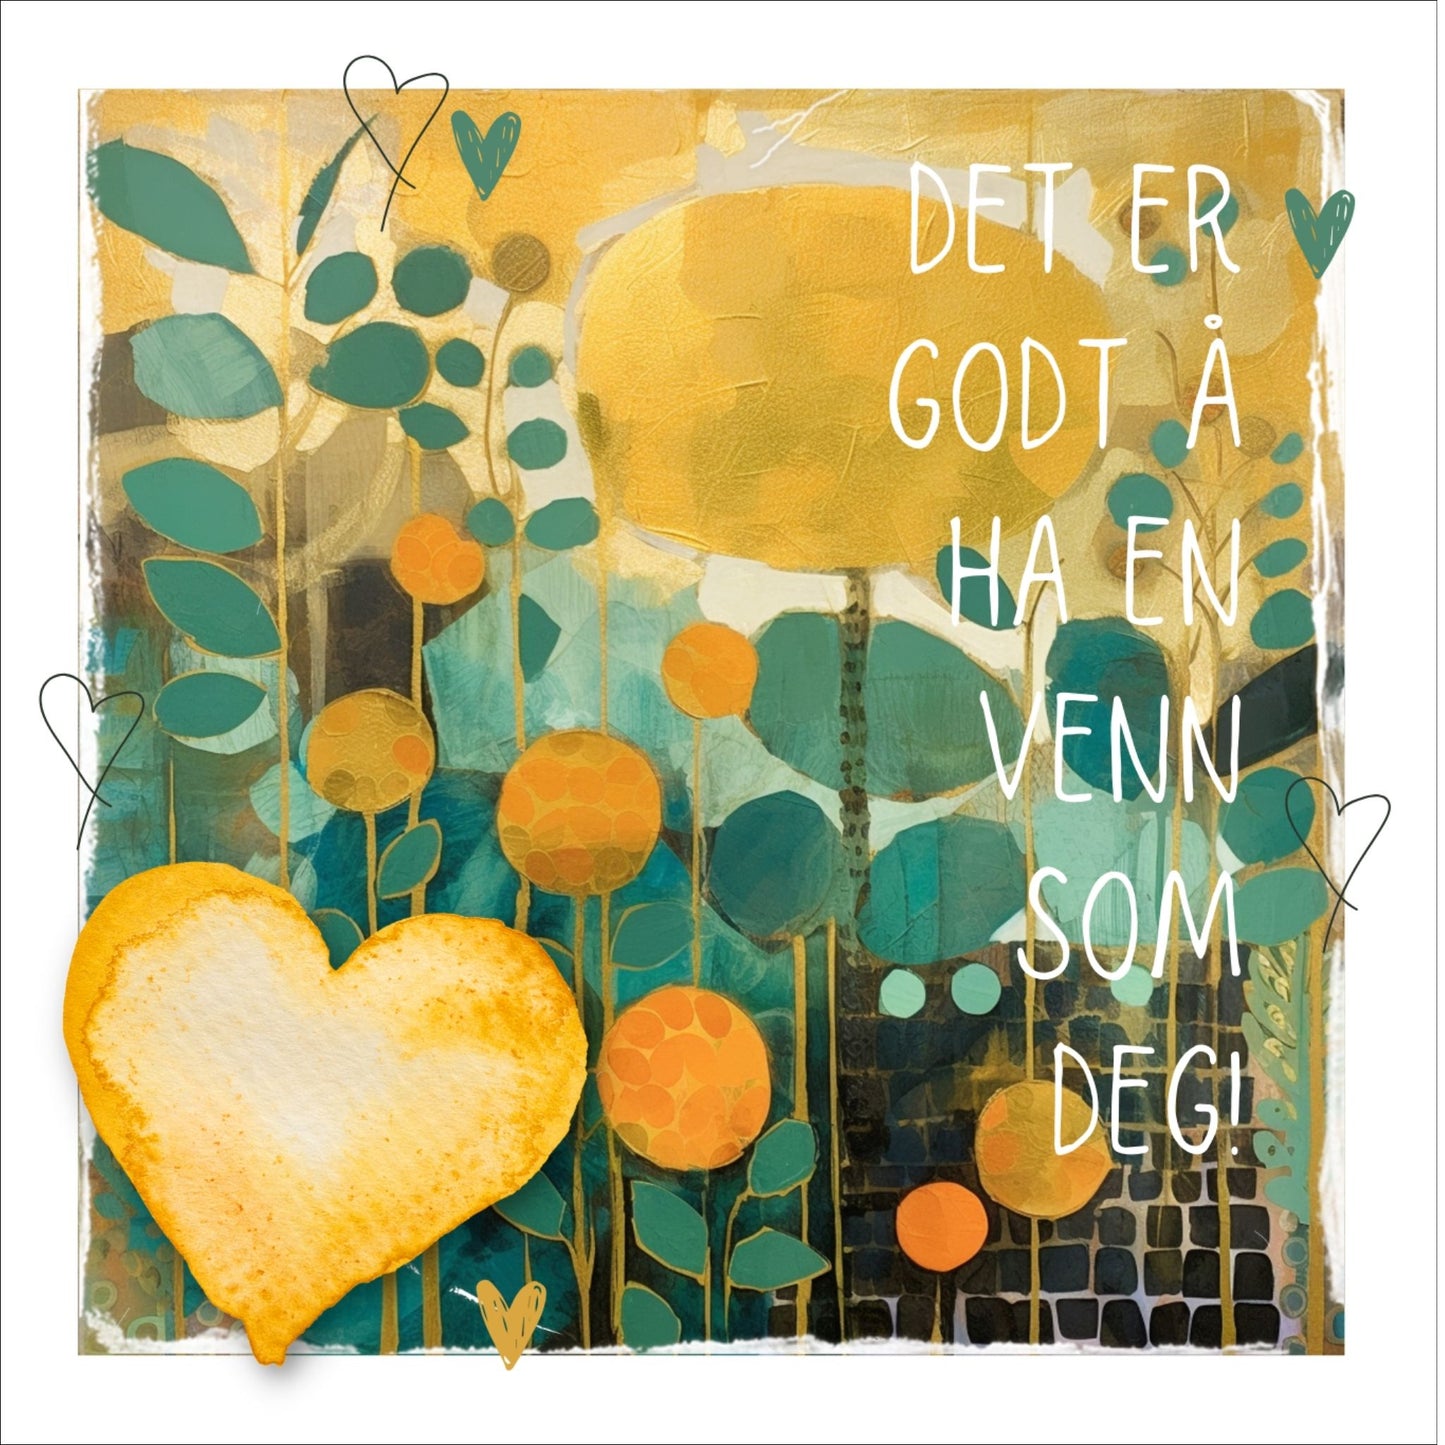 Plakat med lysegult hjerte og tekst "Det er godt å ha en venn som deg" - og et motiv med farger i grønn, gul og oransje. Med hvit kant på 1,5 cm. 